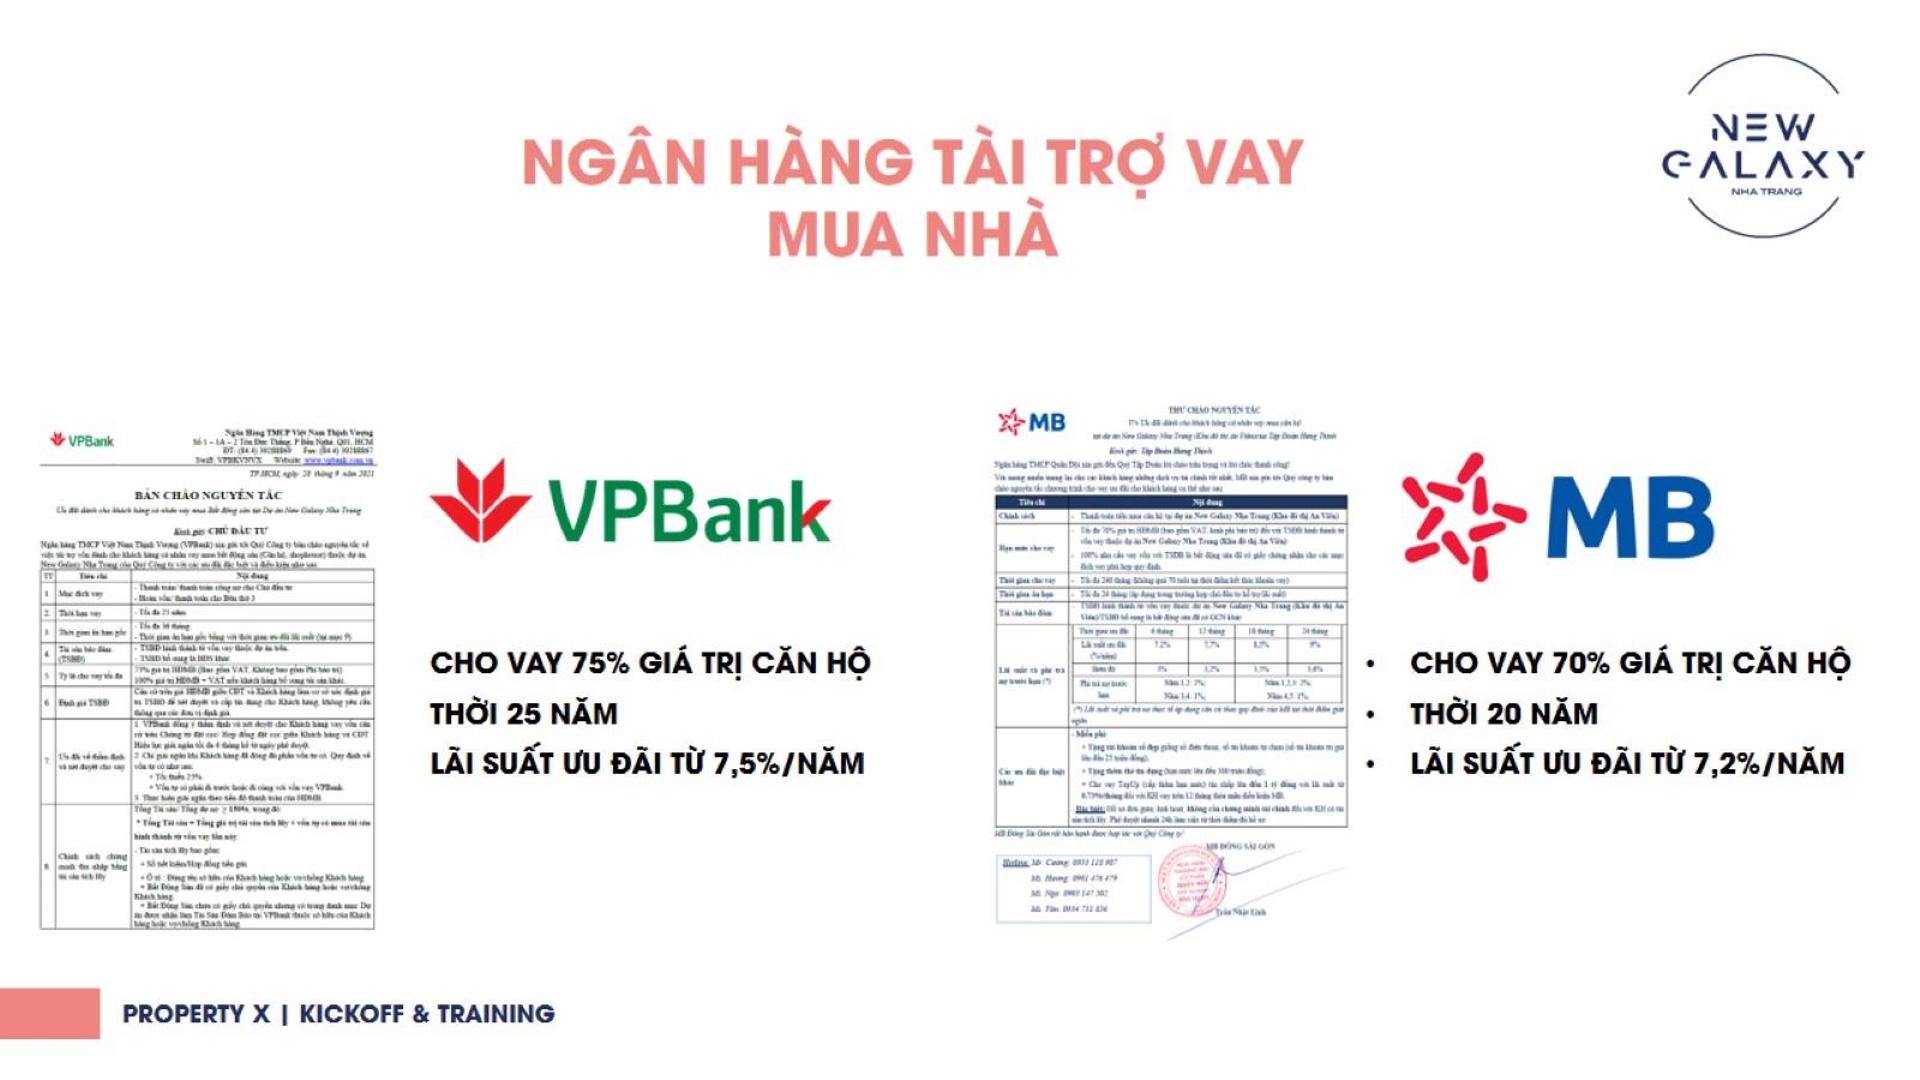 2 ngân hàng hỗ trợ cho vay căn hộ New Galaxy Nha Trang